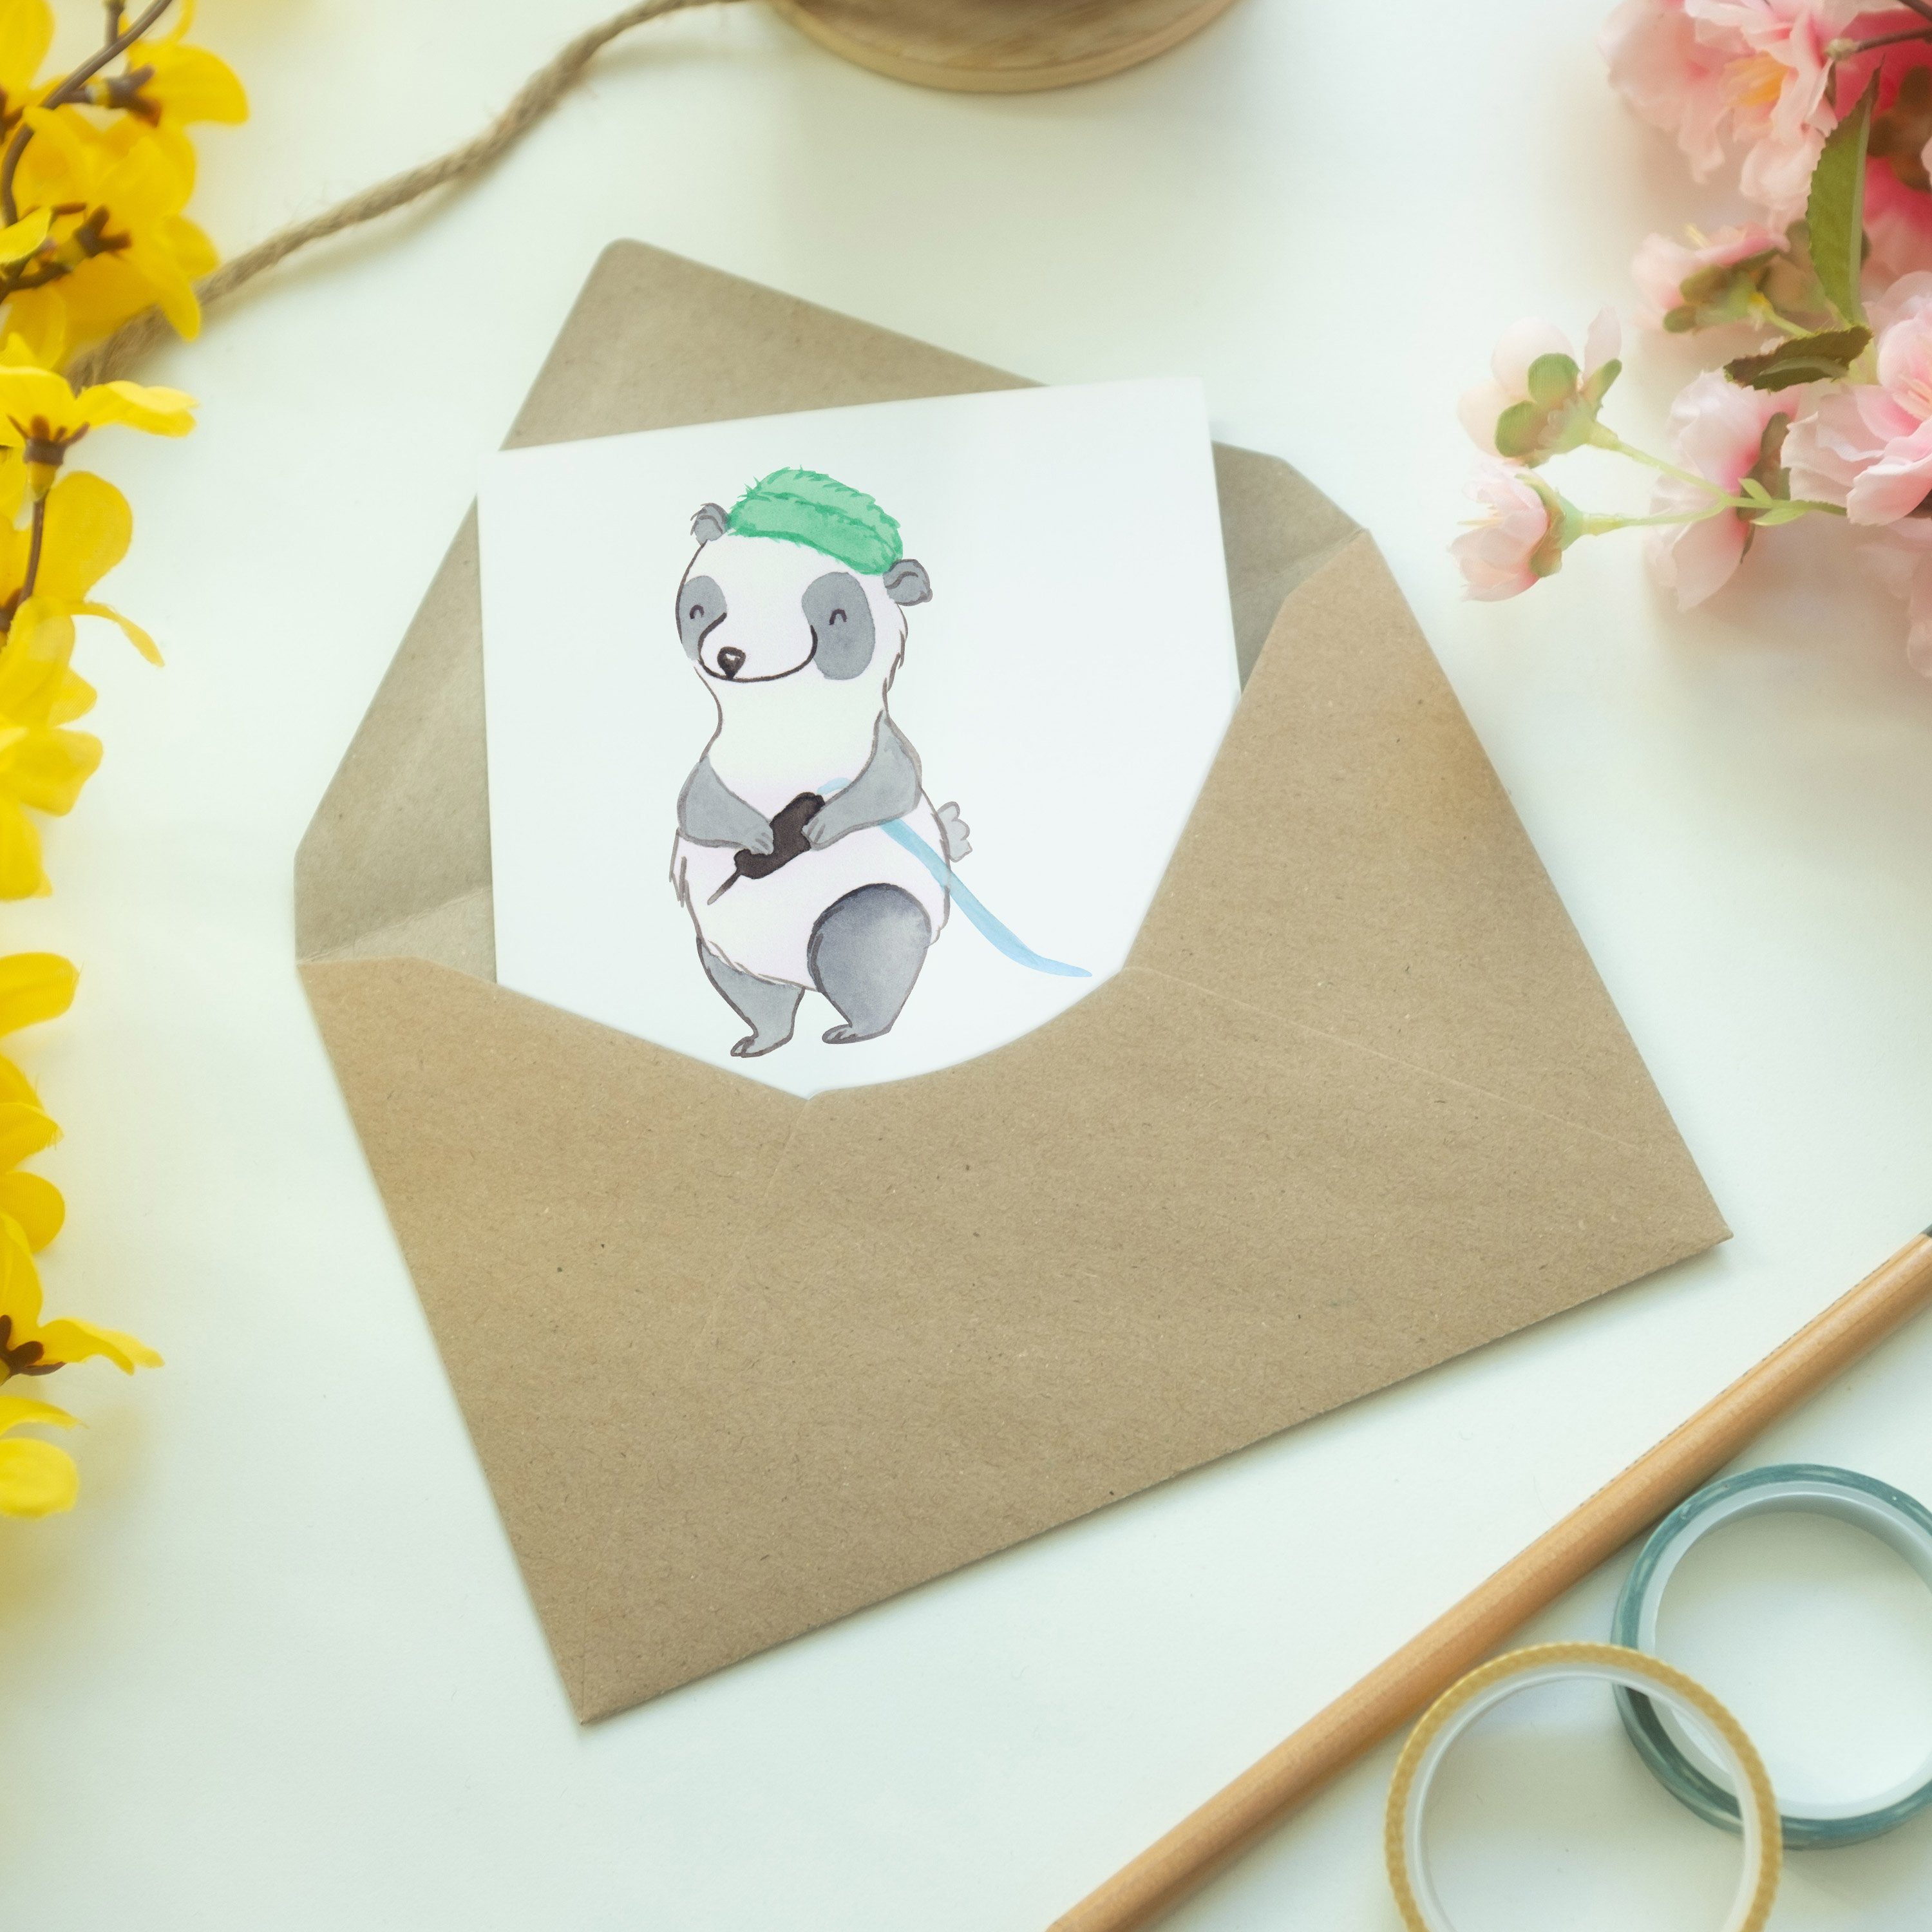 Mr. Tätowierer - Geschenk, Herz mit Grußkarte Mrs. - Geburtstagskarte & Weiß Panda Mitarbeiter,